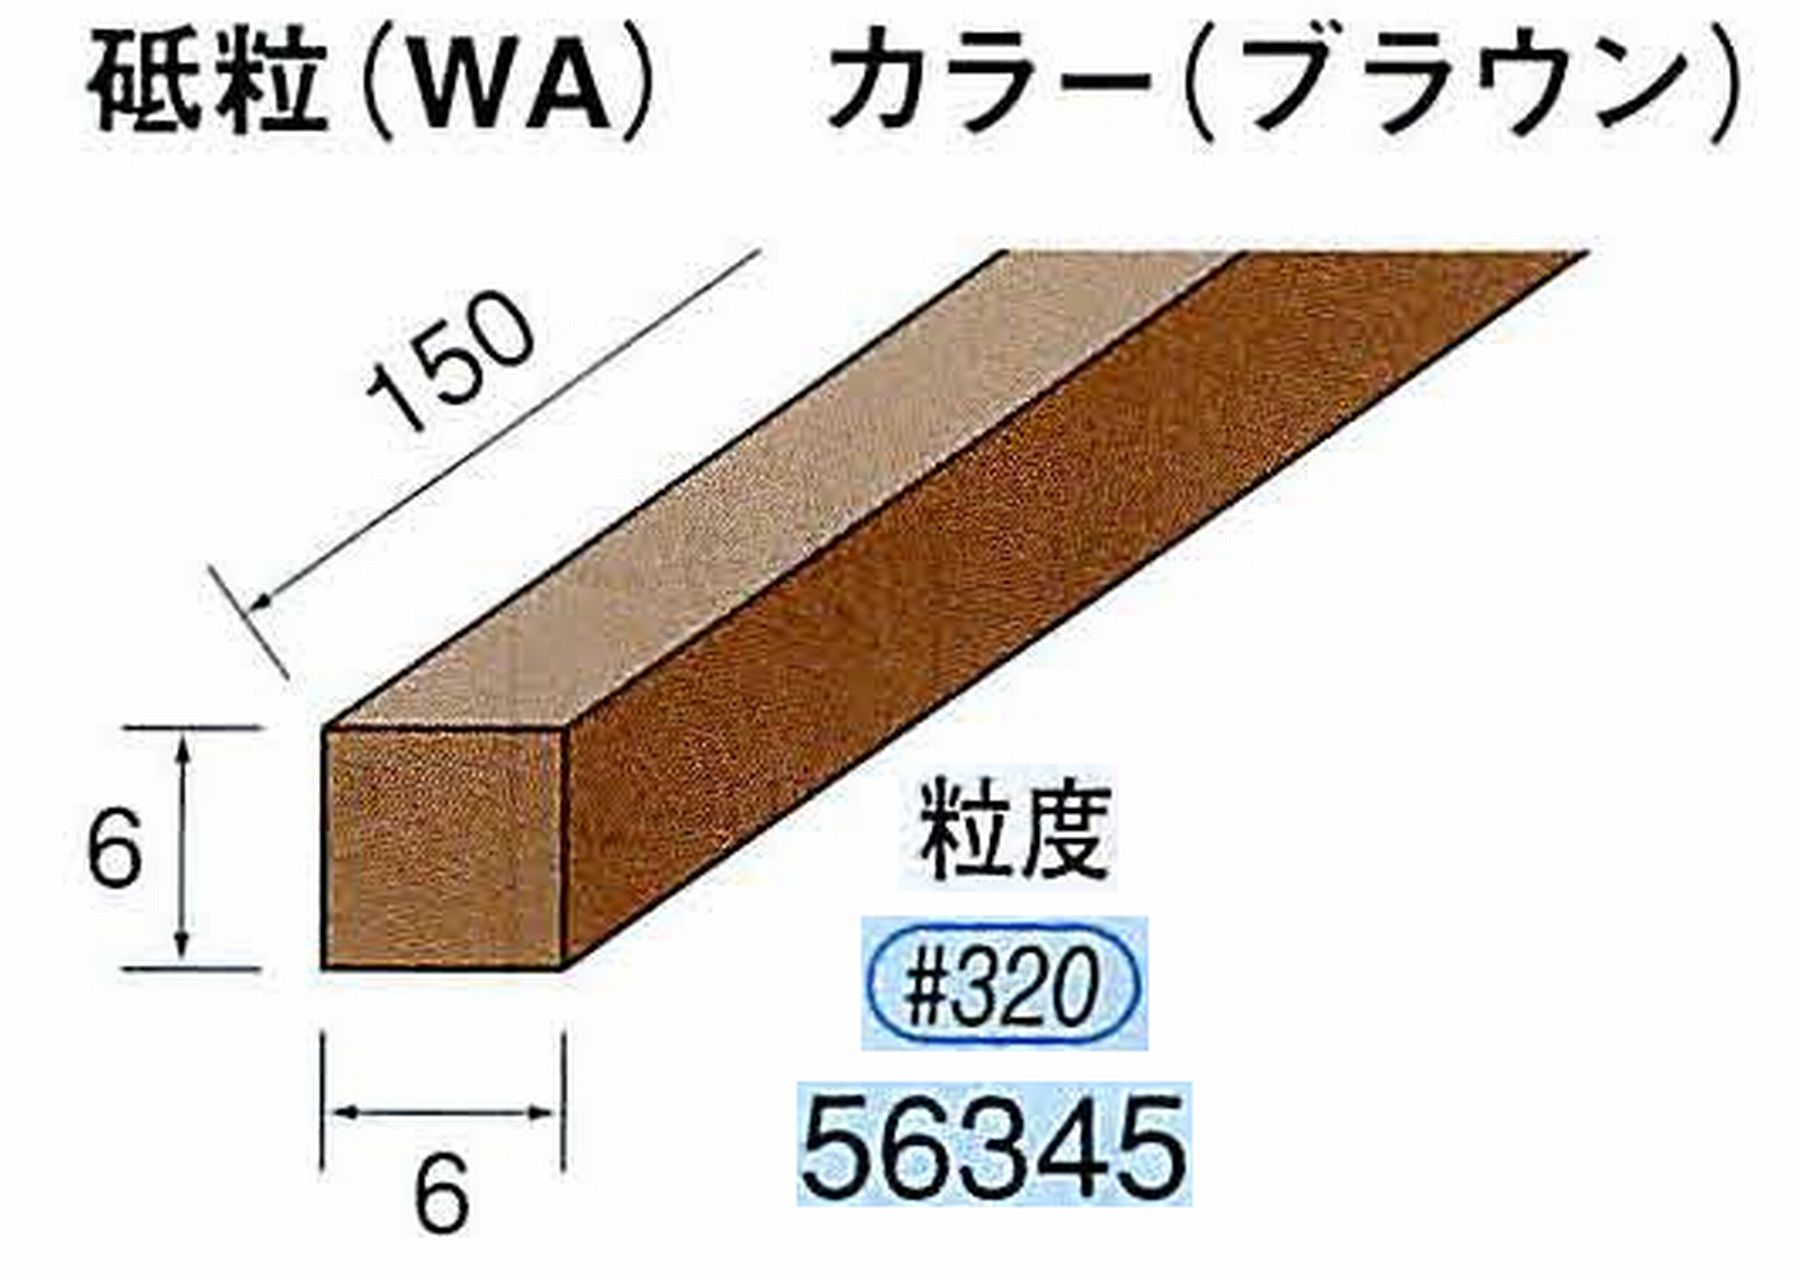 ナカニシ/NAKANISHI スティック砥石 ブラウン・フィニッシュシリーズ 砥粒(WA) 56345